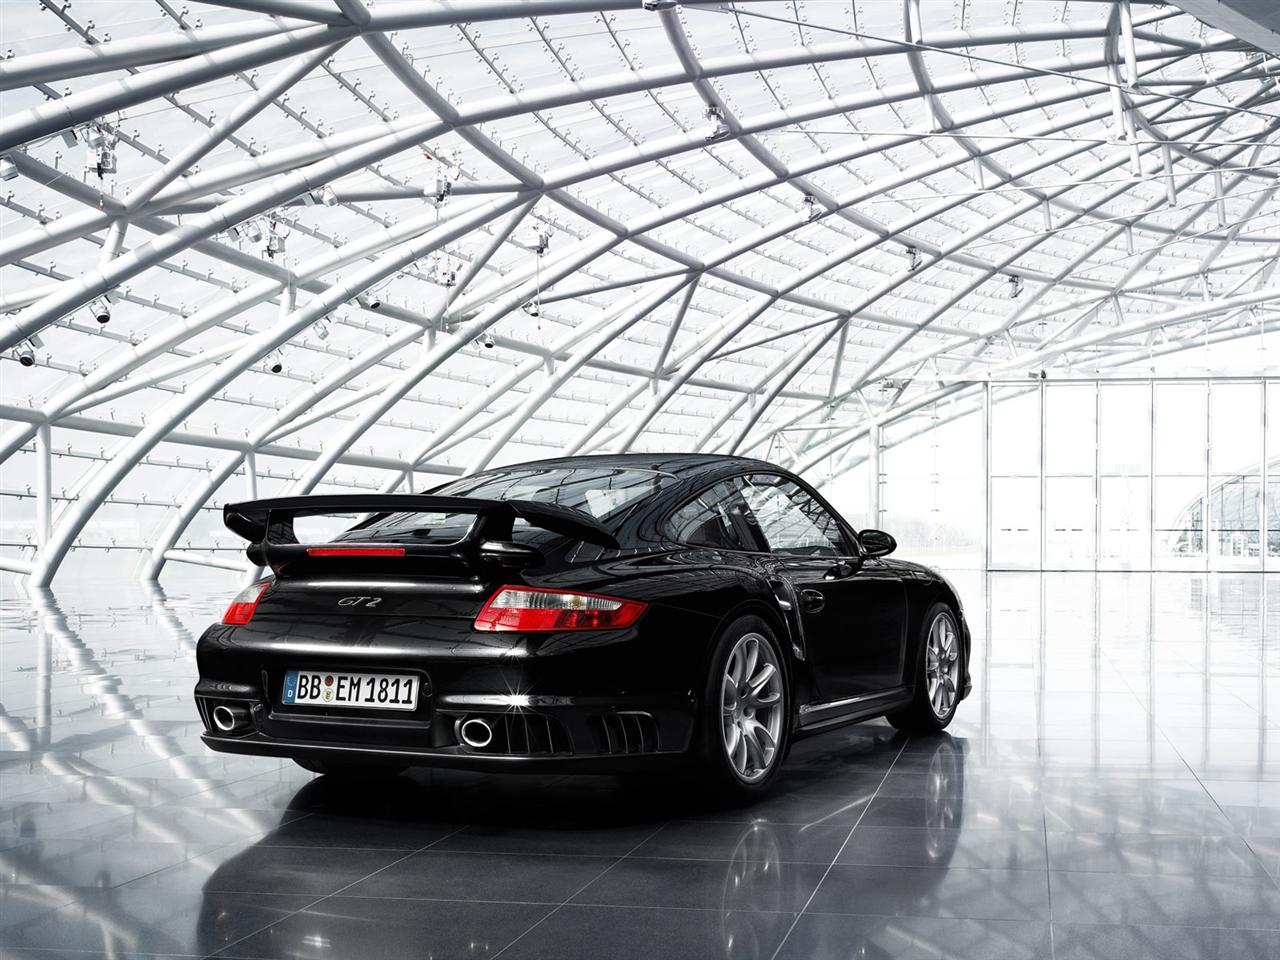 2010 Porsche 911 GT2